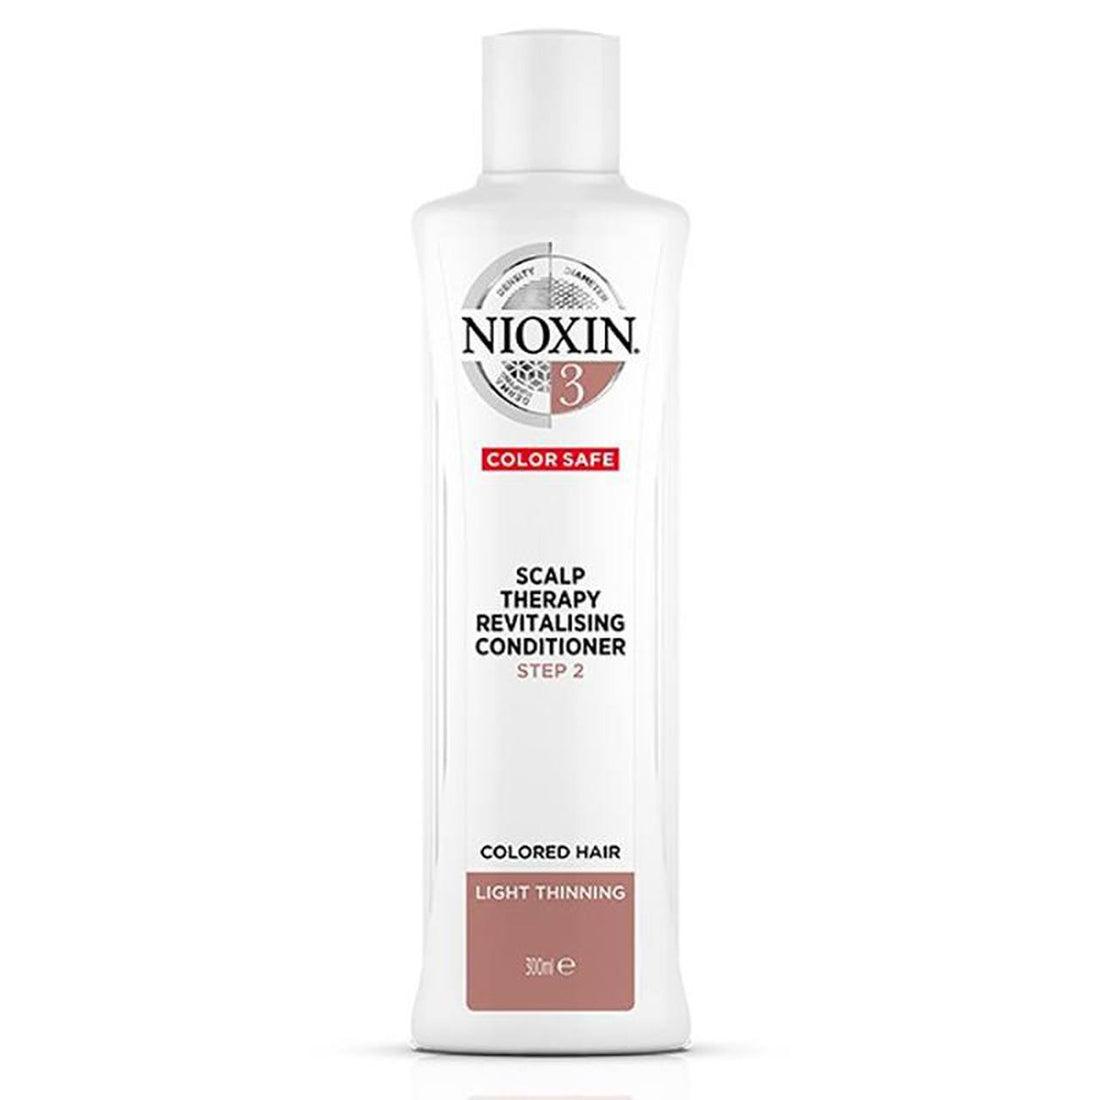 Nioxin Scalp Revitaliser 3